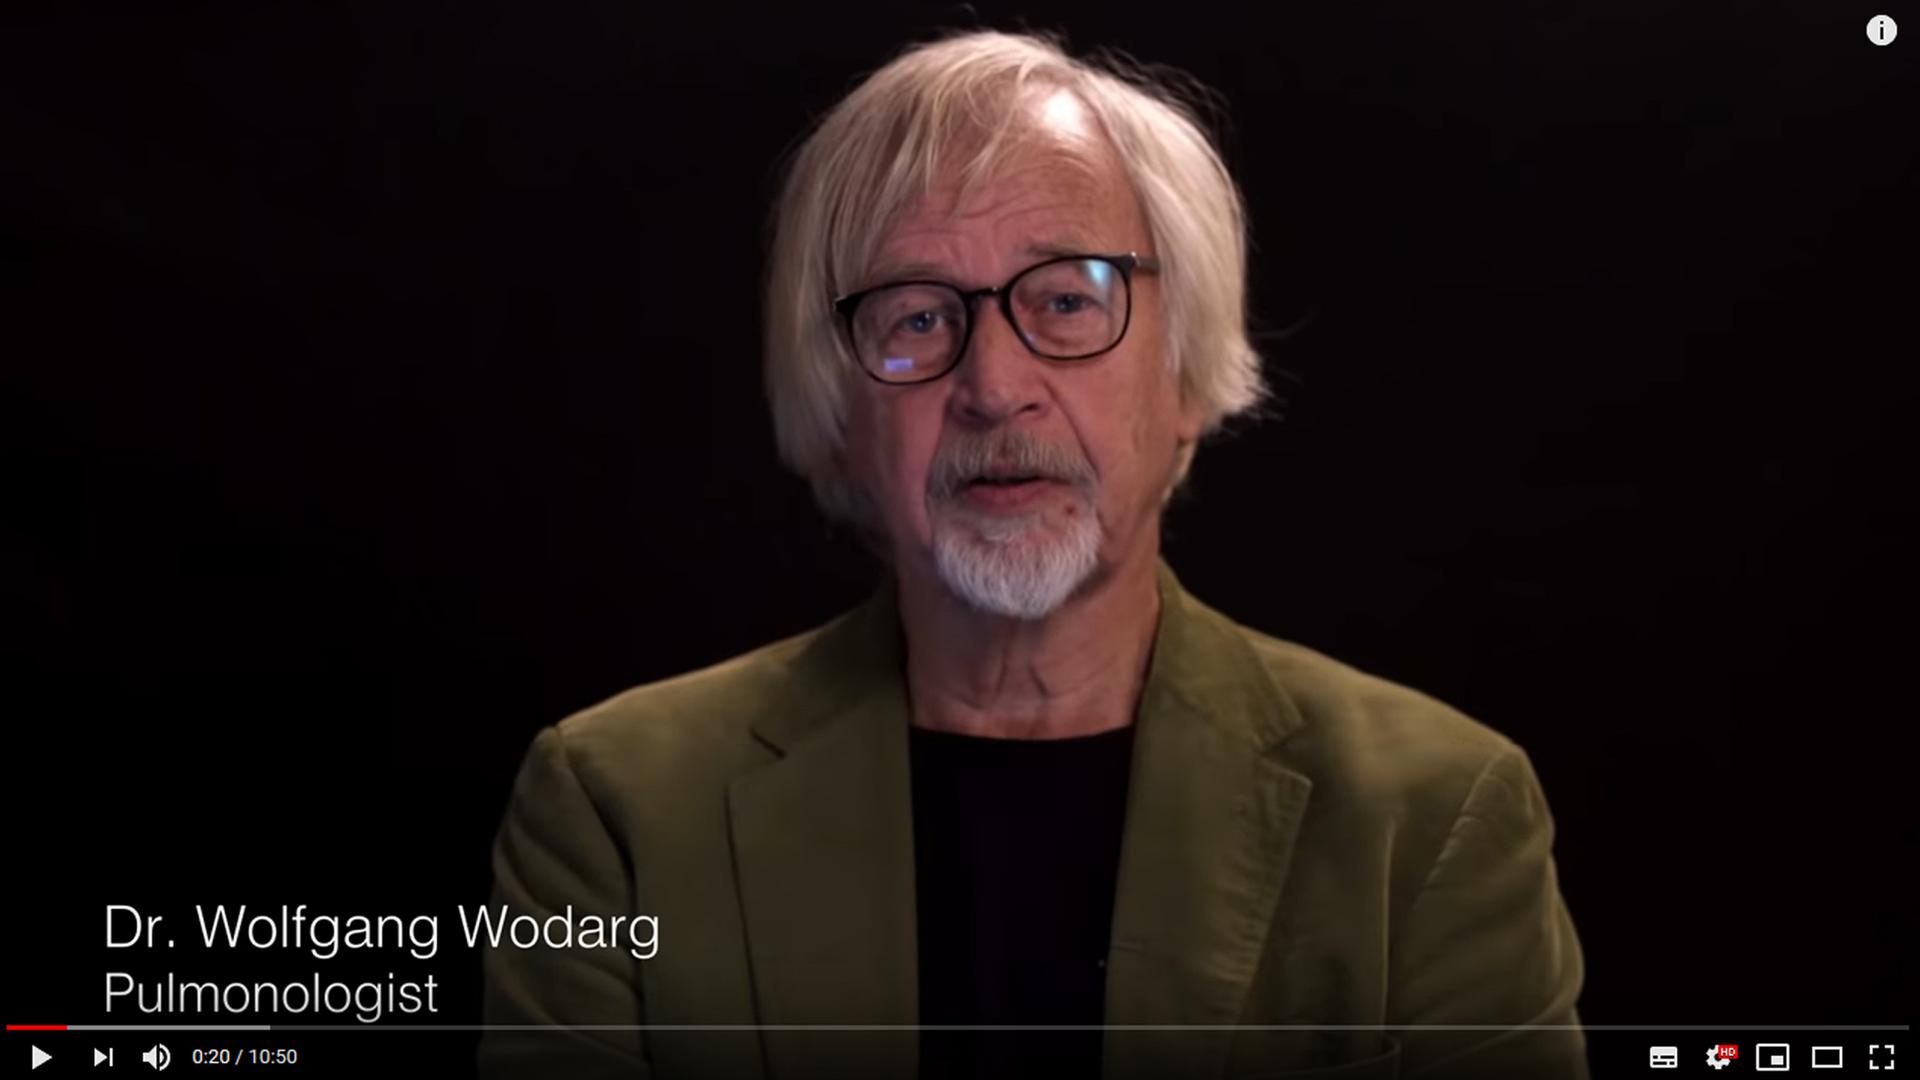 Der Lungenarzt Wolfgang Wodarg in einem Video. Ein Mann mit grauen Haaren und Bart sitzt vor einem schwarzen Hintergrund und schaut in eine Kamera.